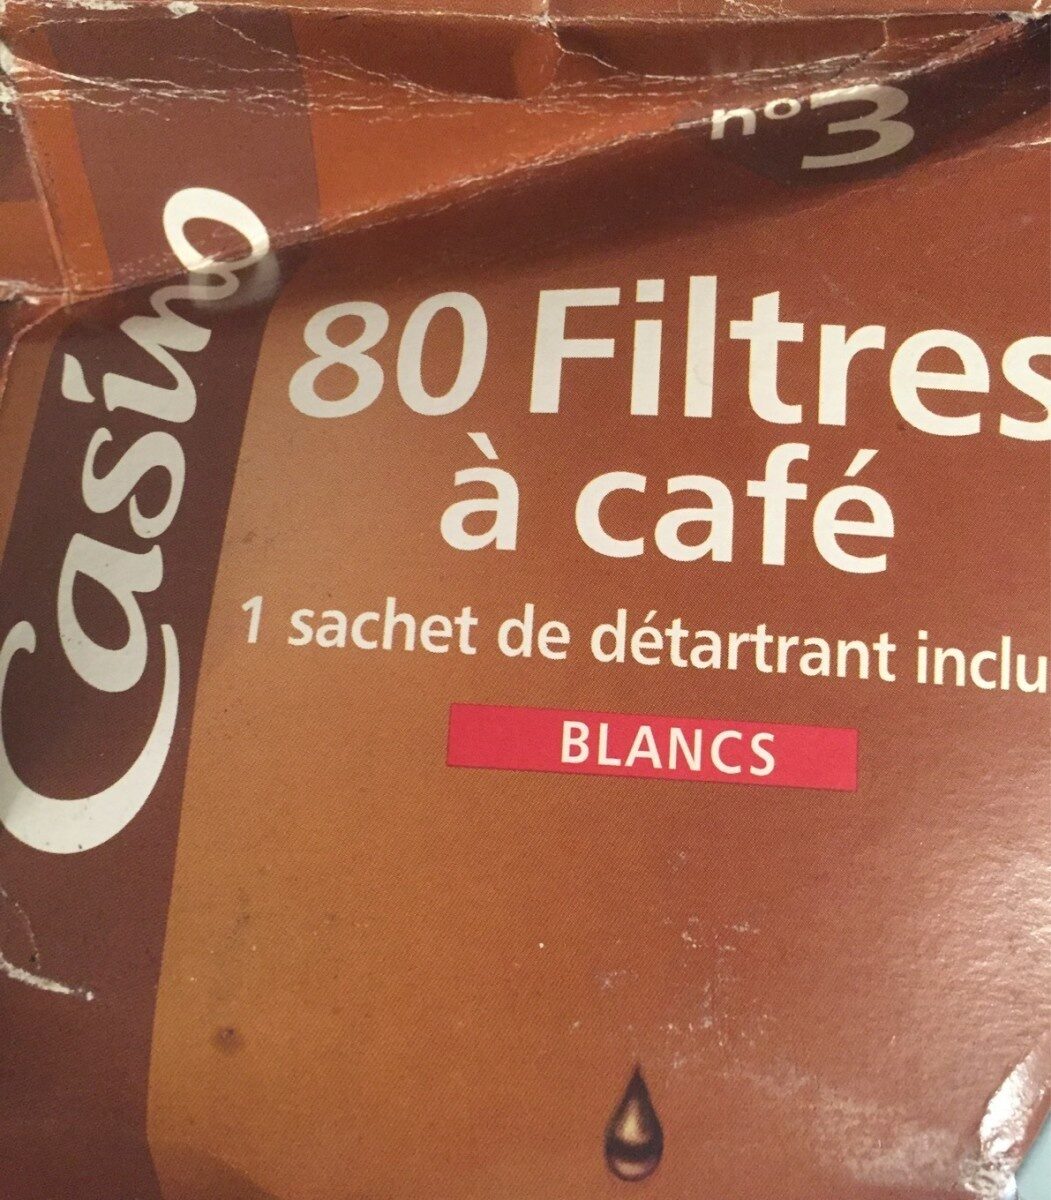 80 filtres a café - Product - fr